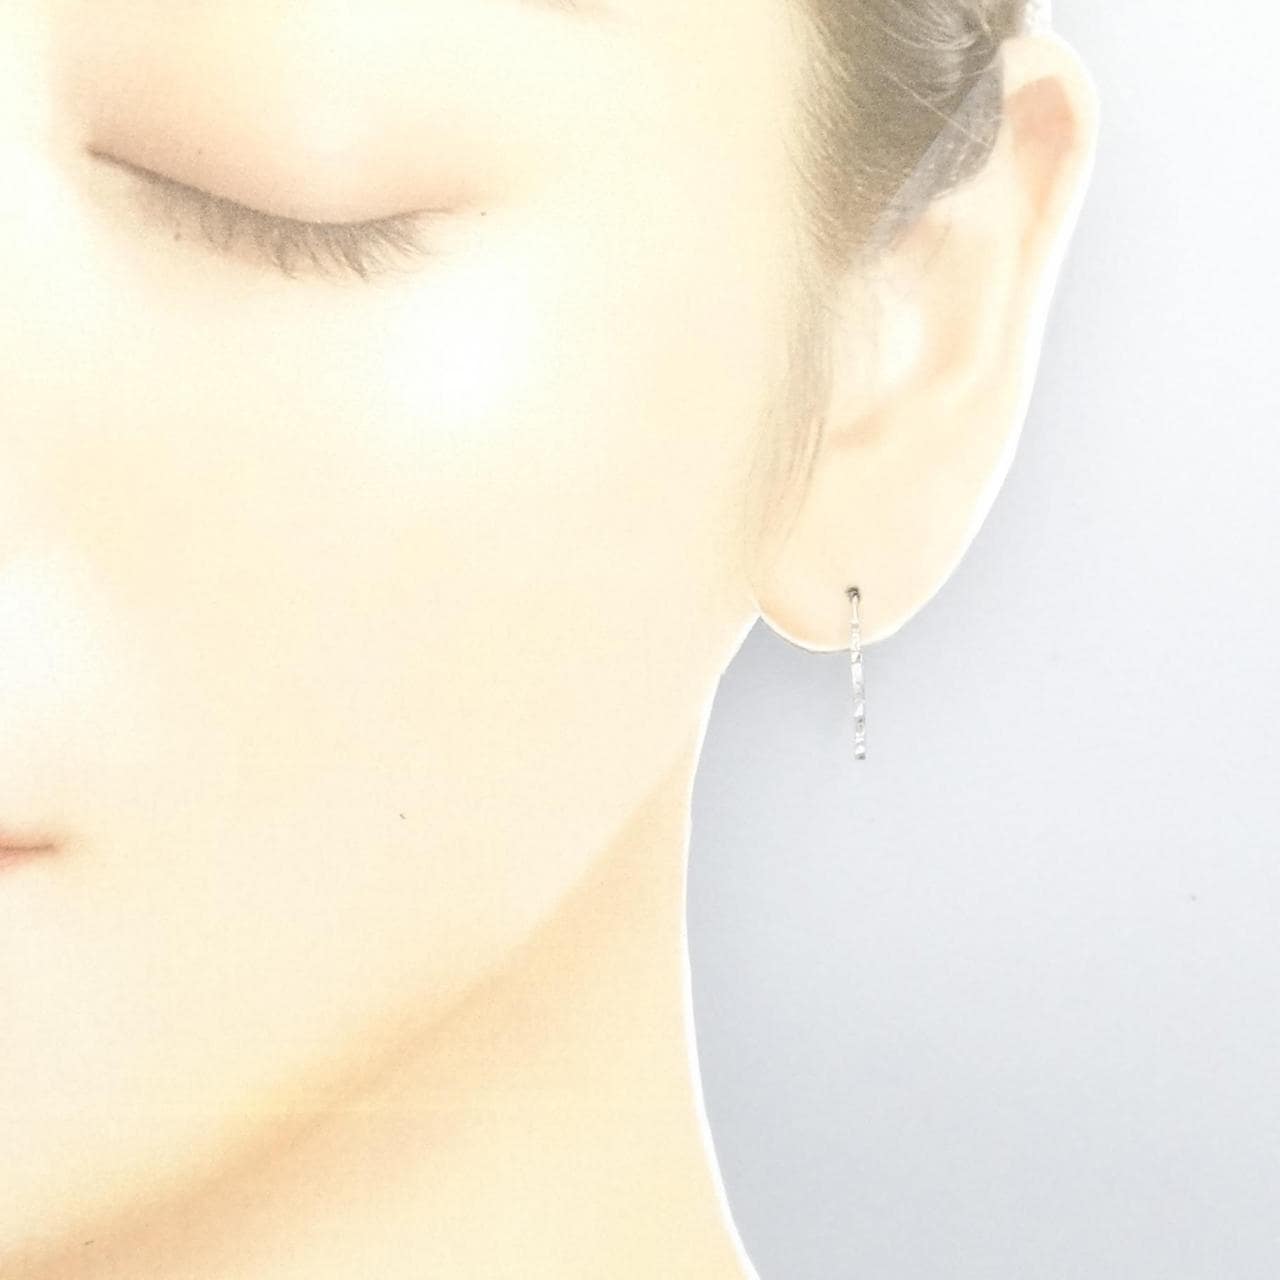 [BRAND NEW] K18WG clover earrings